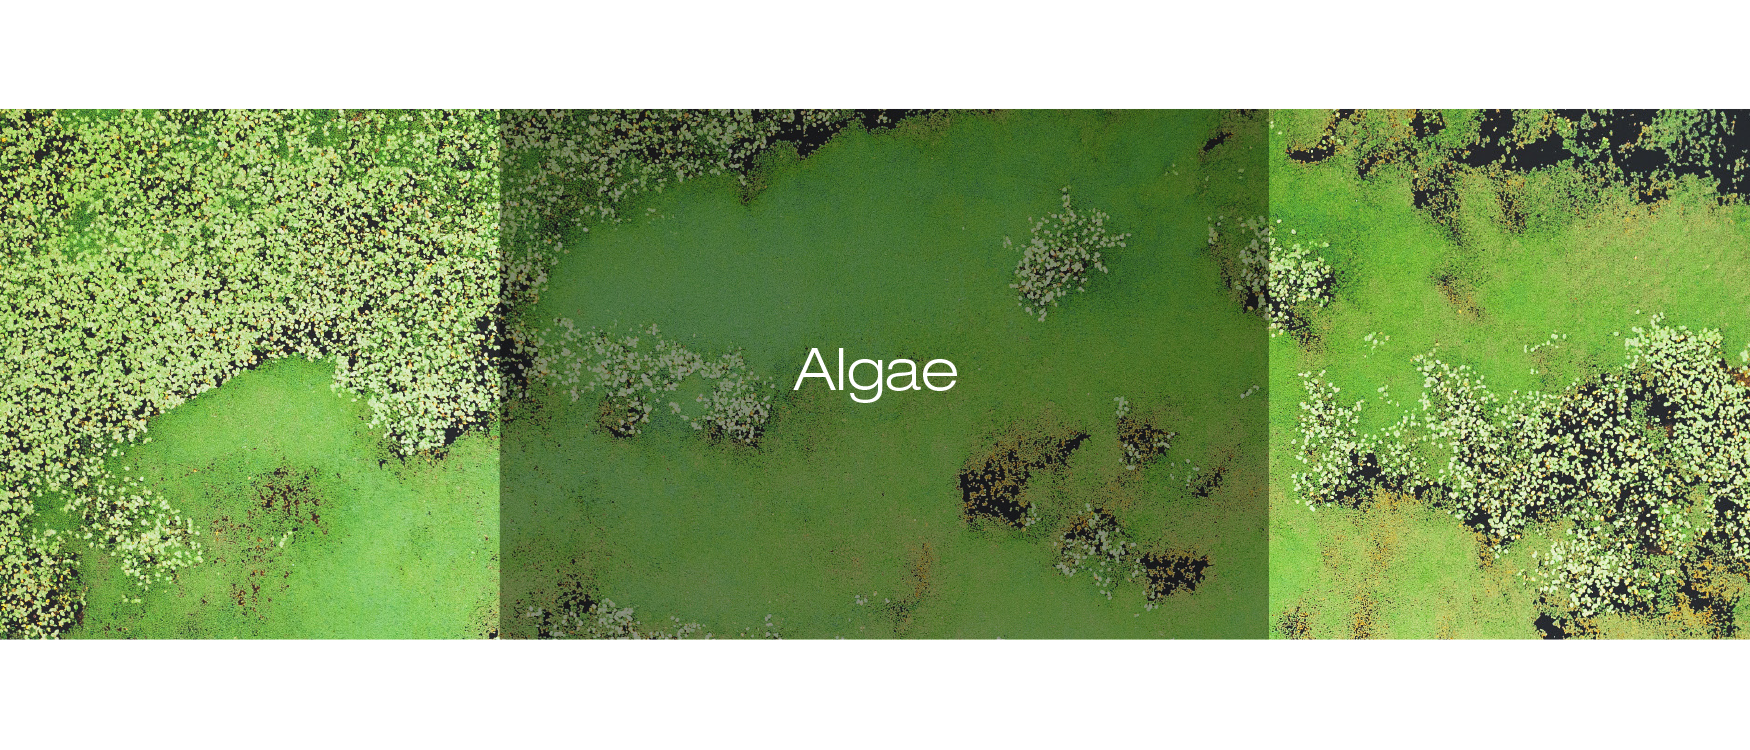 Algas